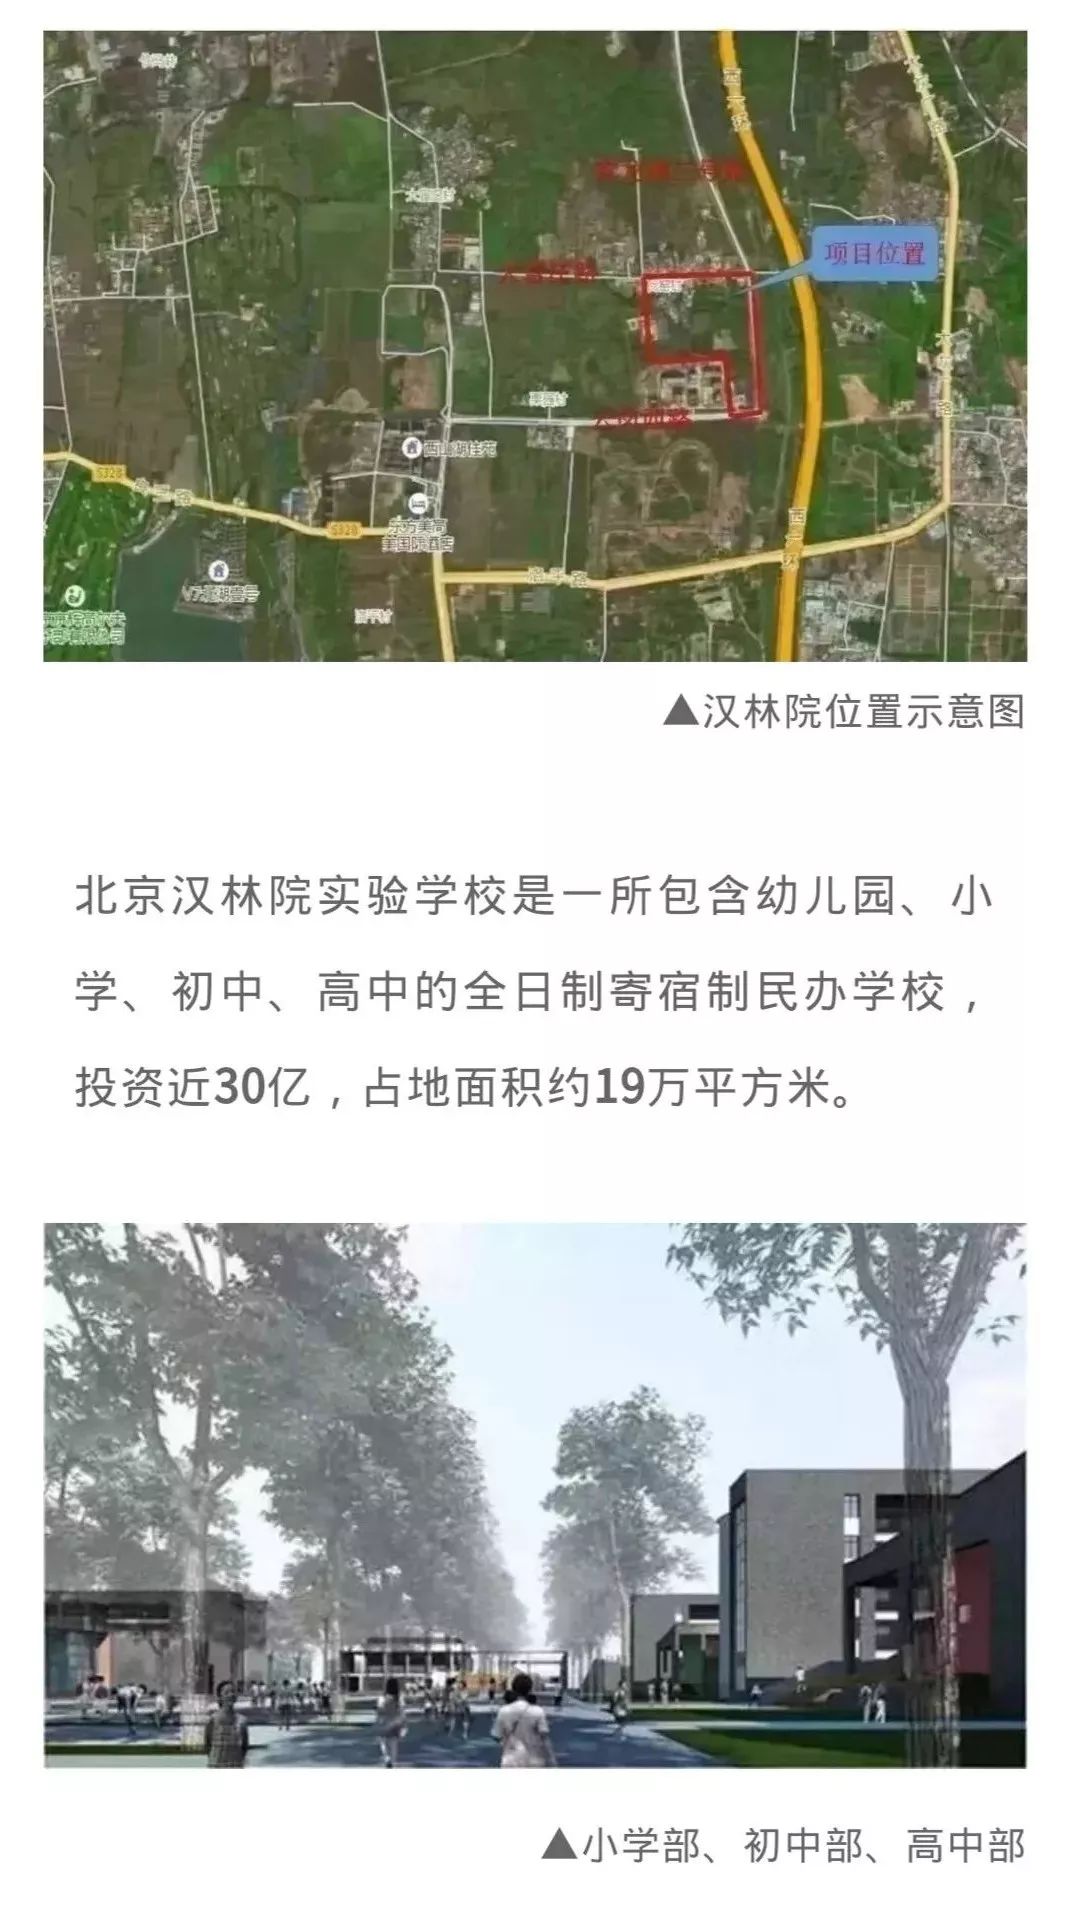 这所位于北京南城的丰台区王佐镇的学校,将包含幼儿园,小学,初中,高中